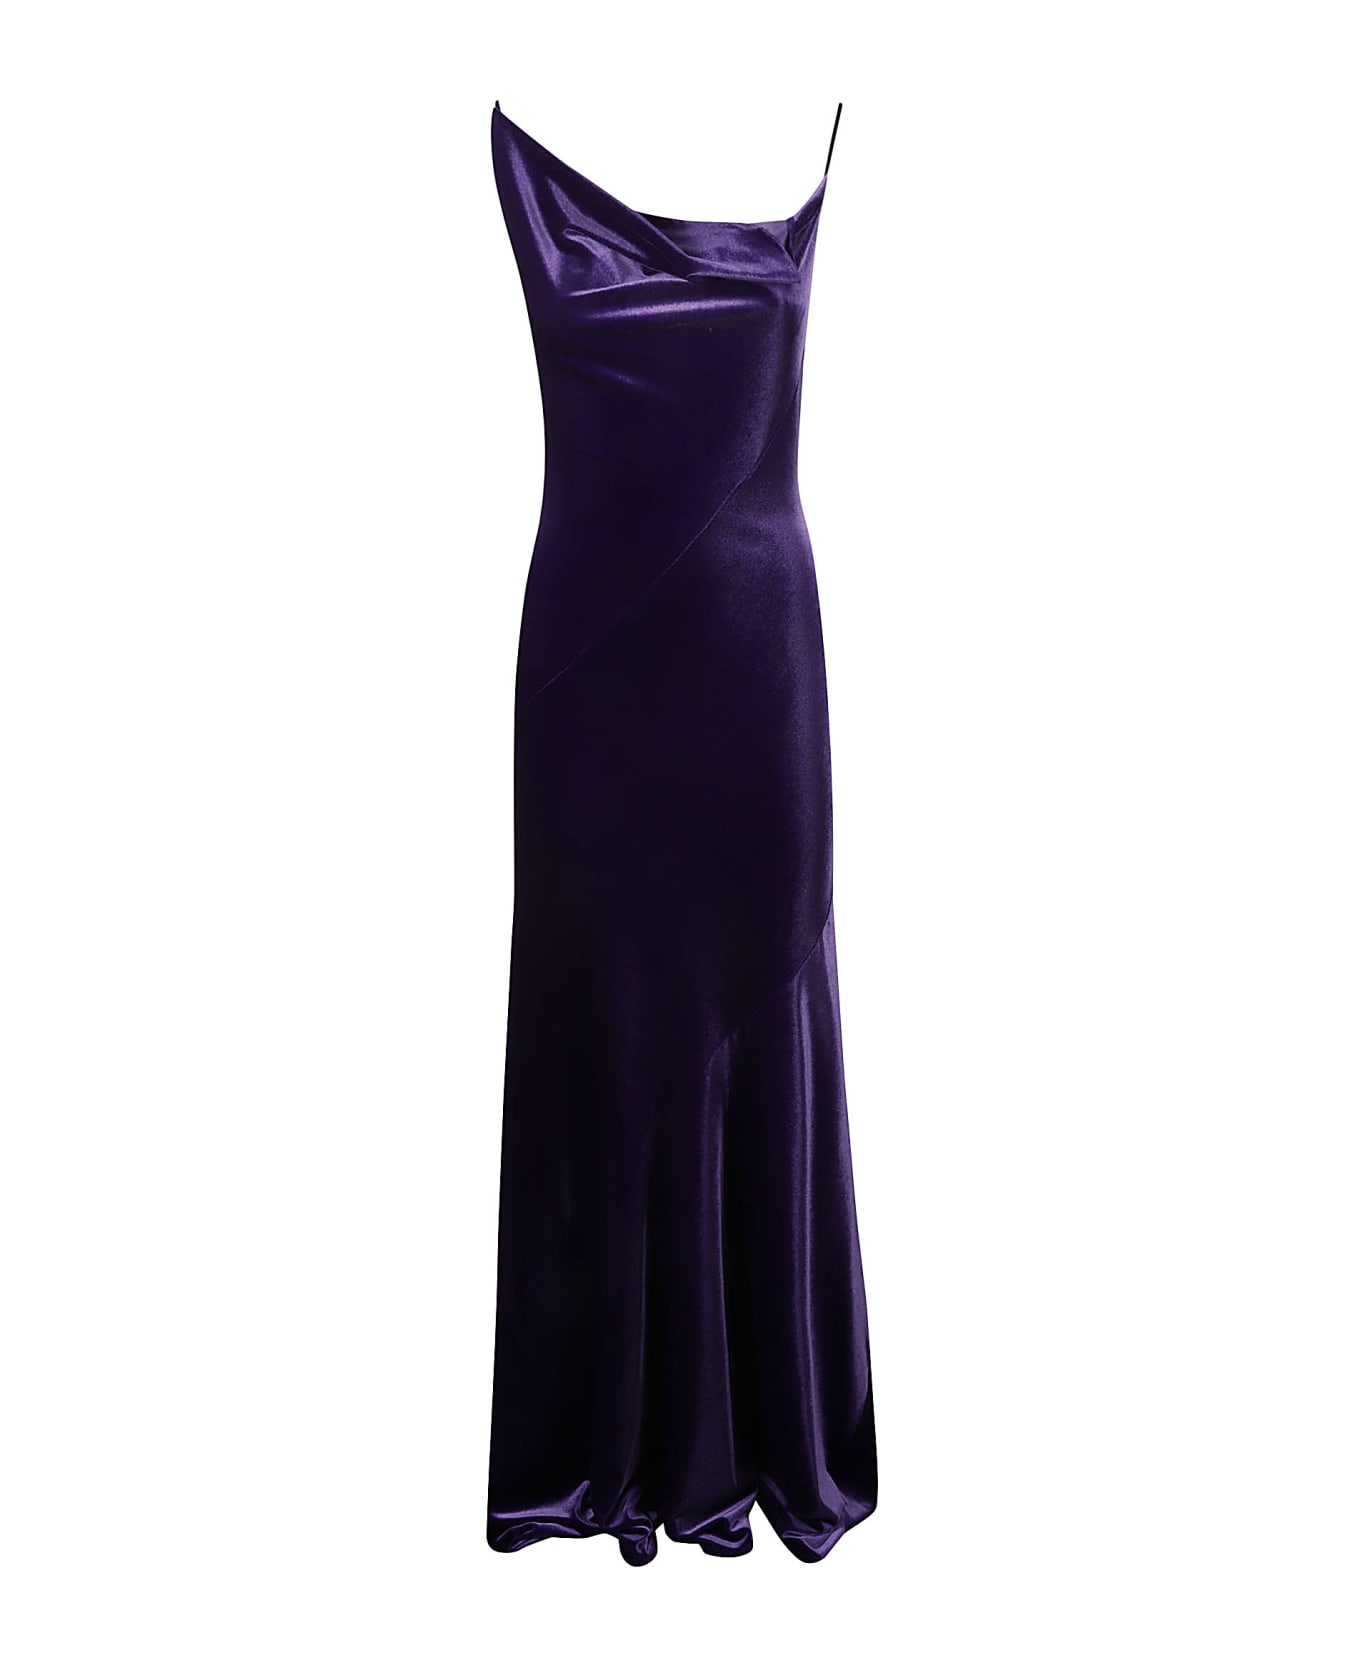 Philosophy di Lorenzo Serafini Velvet Long Dress - Violet